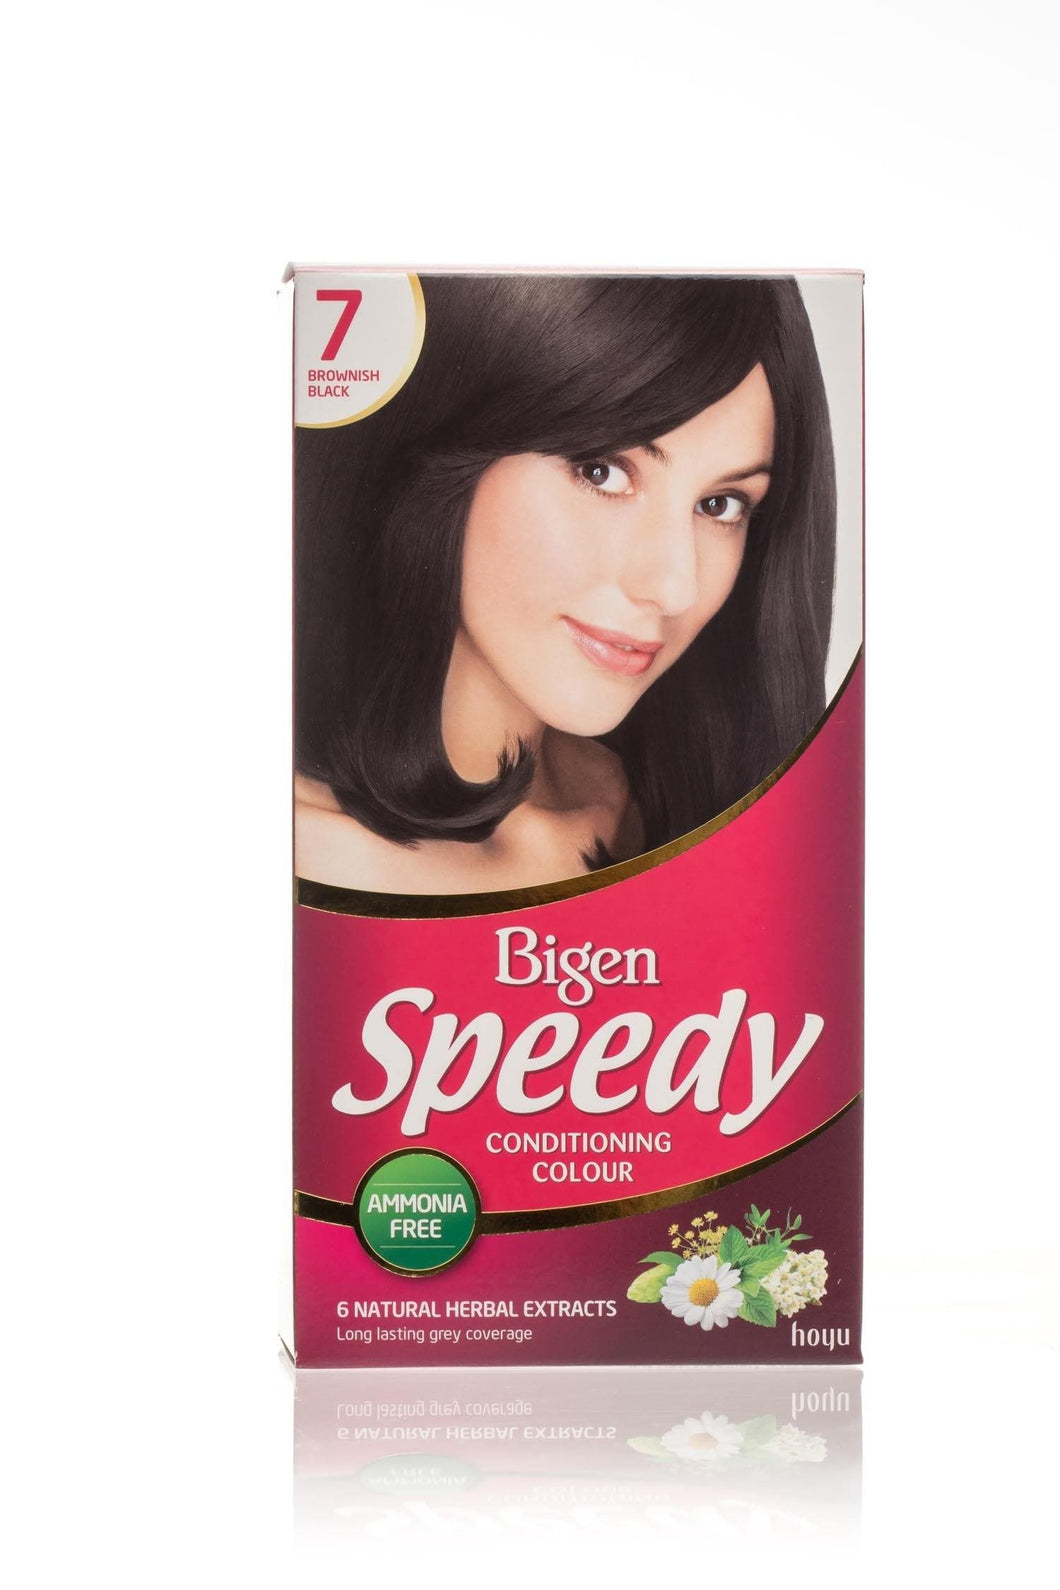 Bigen Women's Speedy Conditioning Colour - 7 - Brownish Black - Bigen-shop